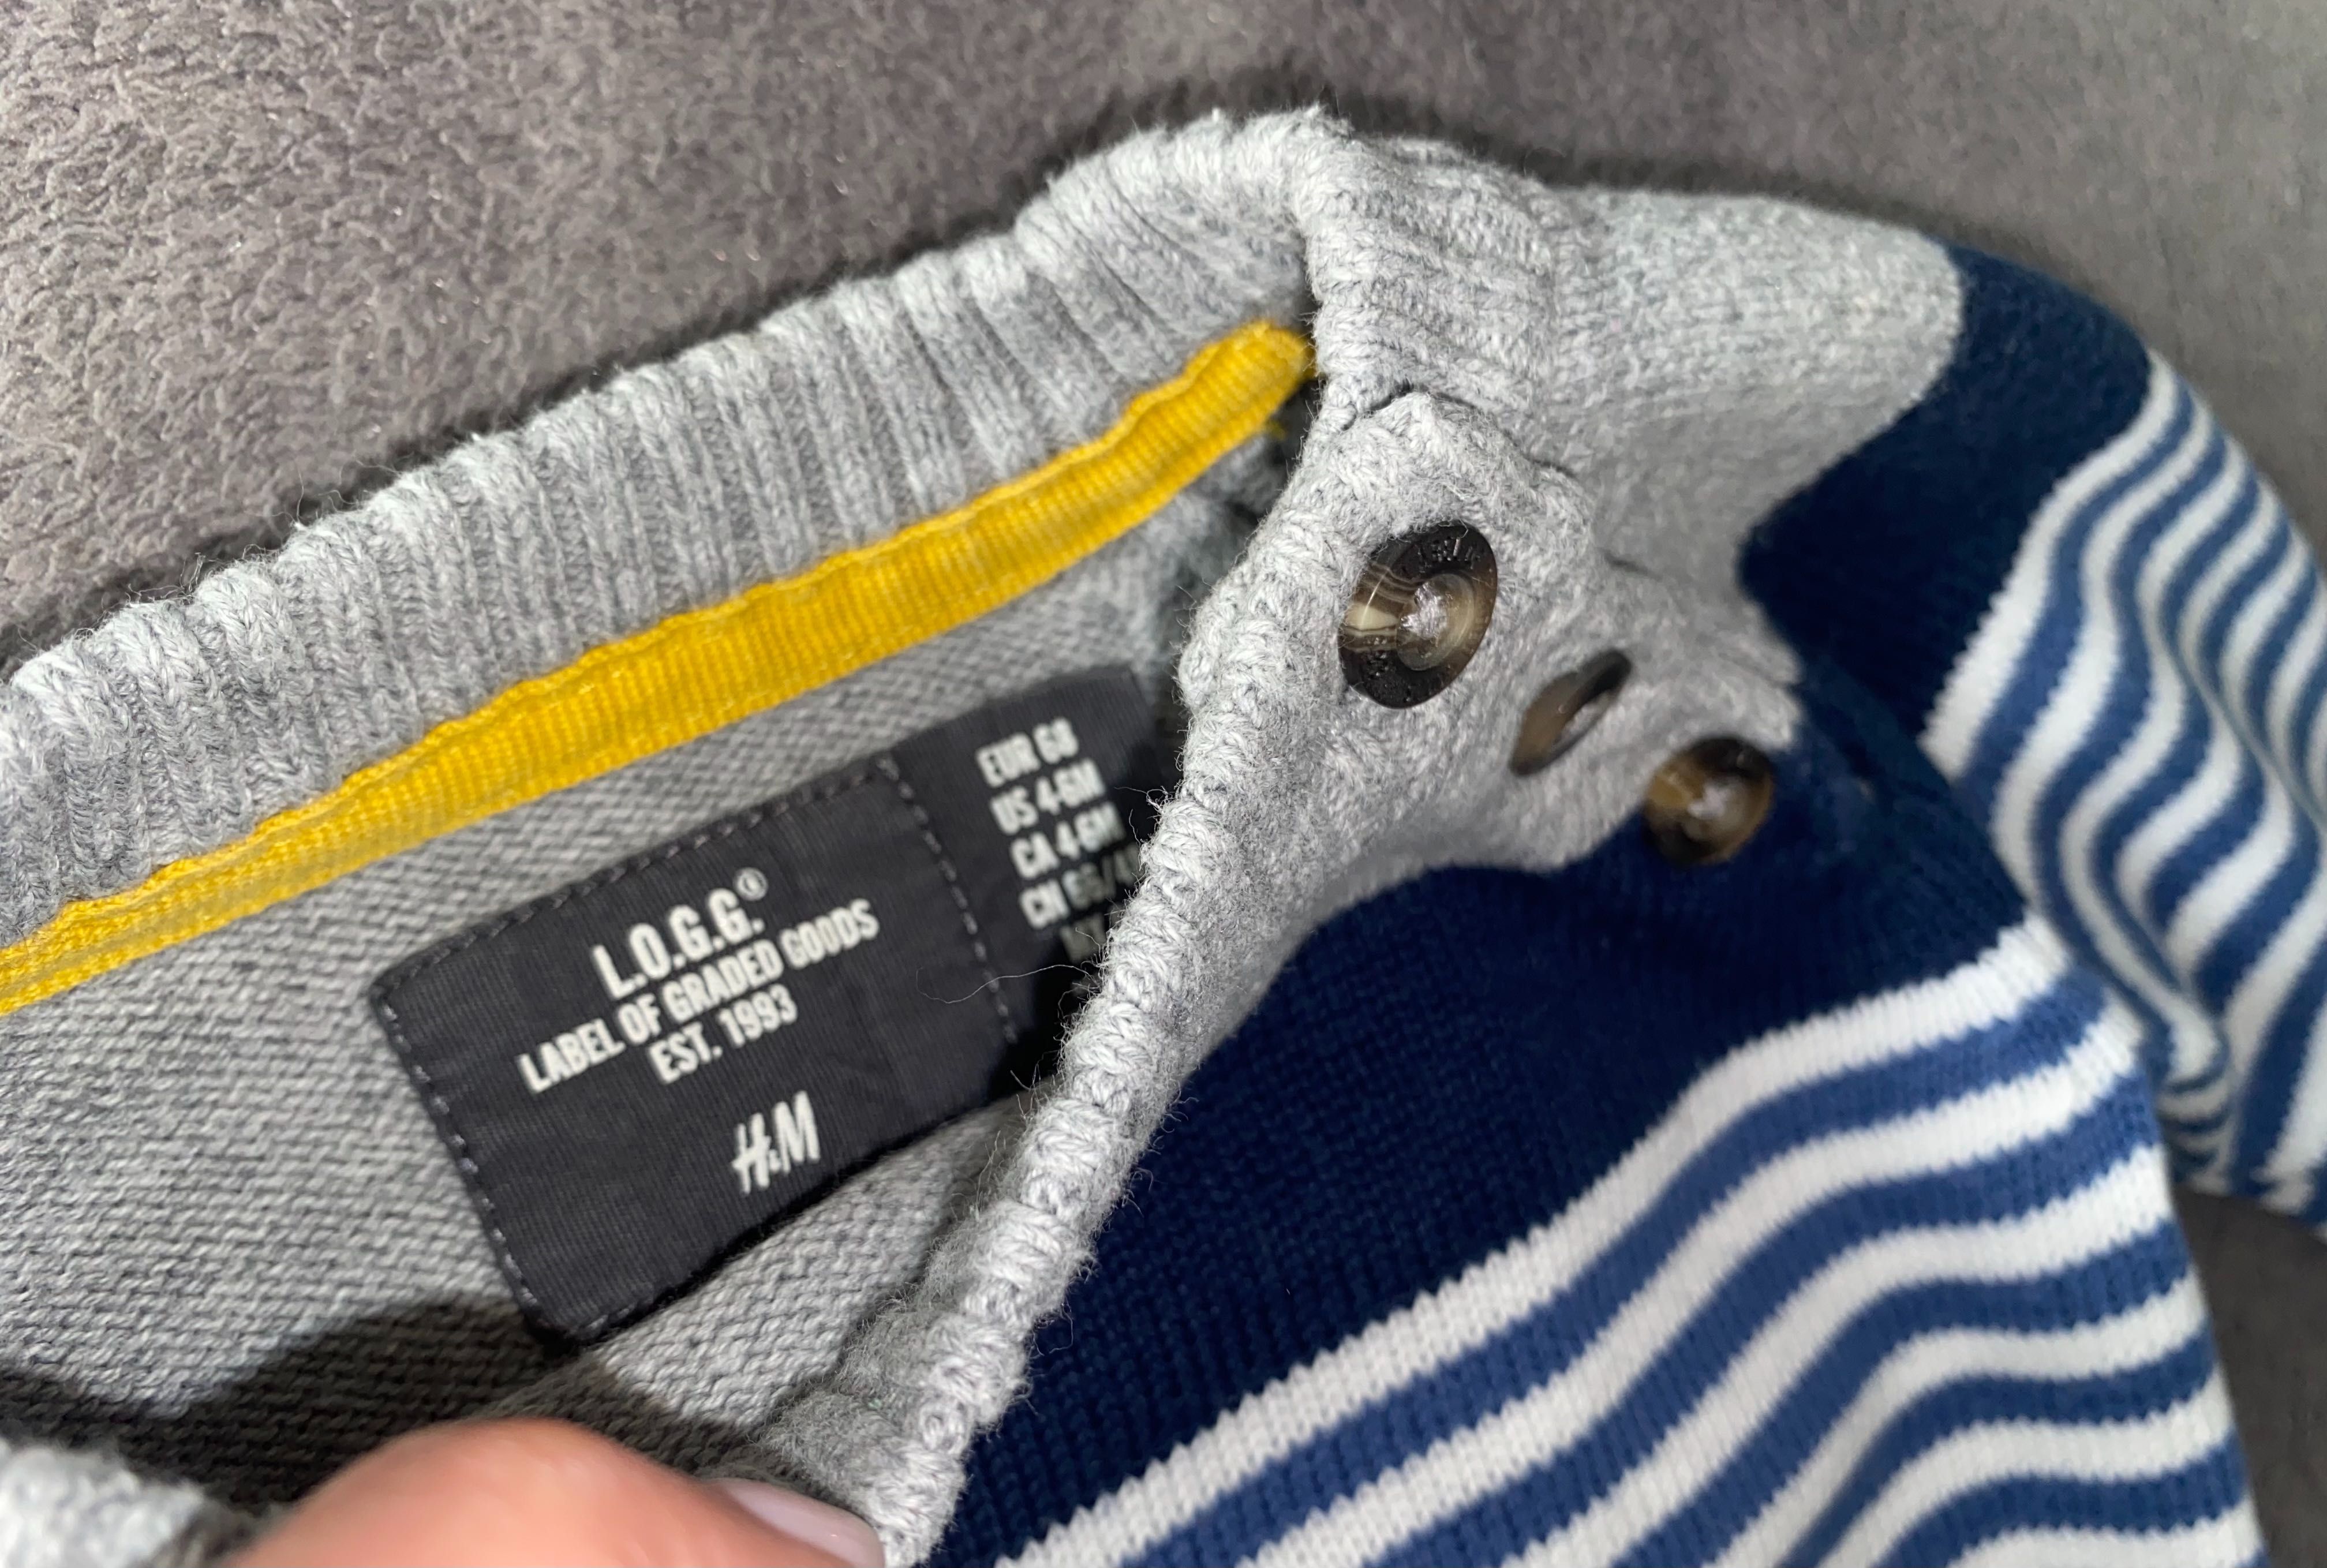 H&m sweterek chłopięcy barwy żeglarskie r. 68